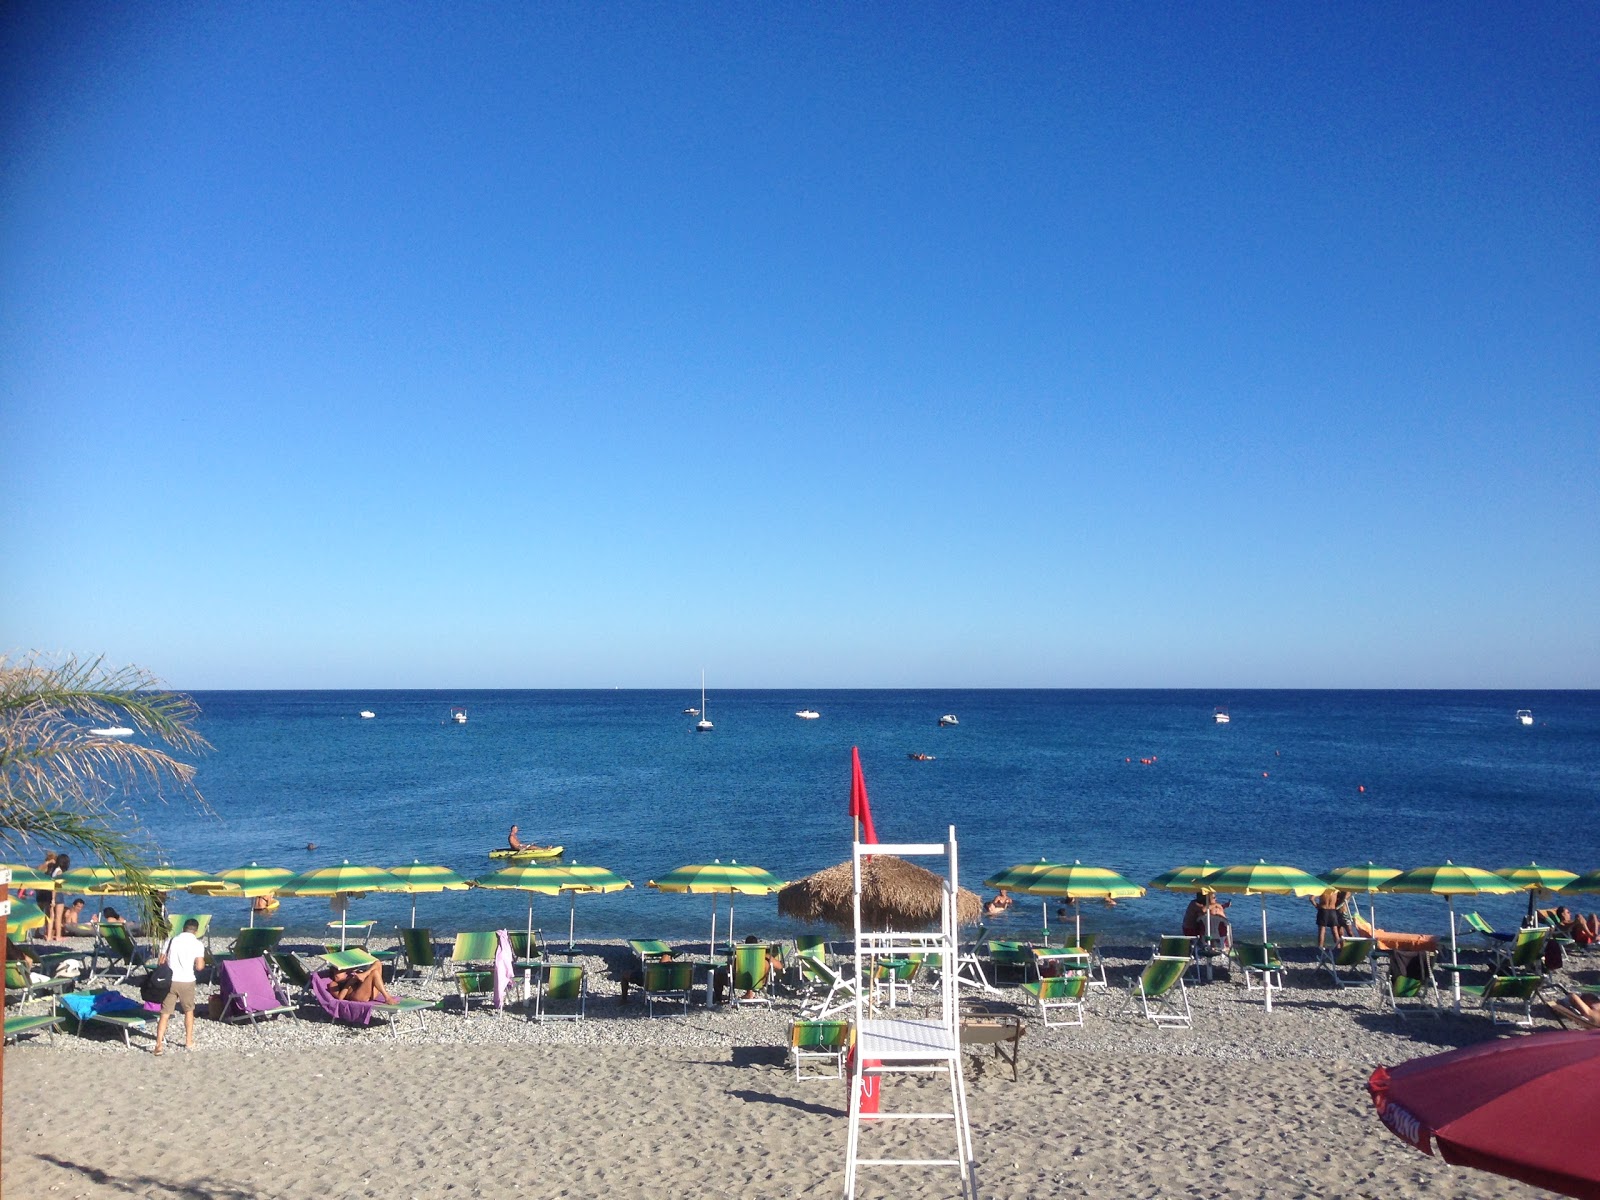 Fotografie cu Bovalino Marina beach - locul popular printre cunoscătorii de relaxare